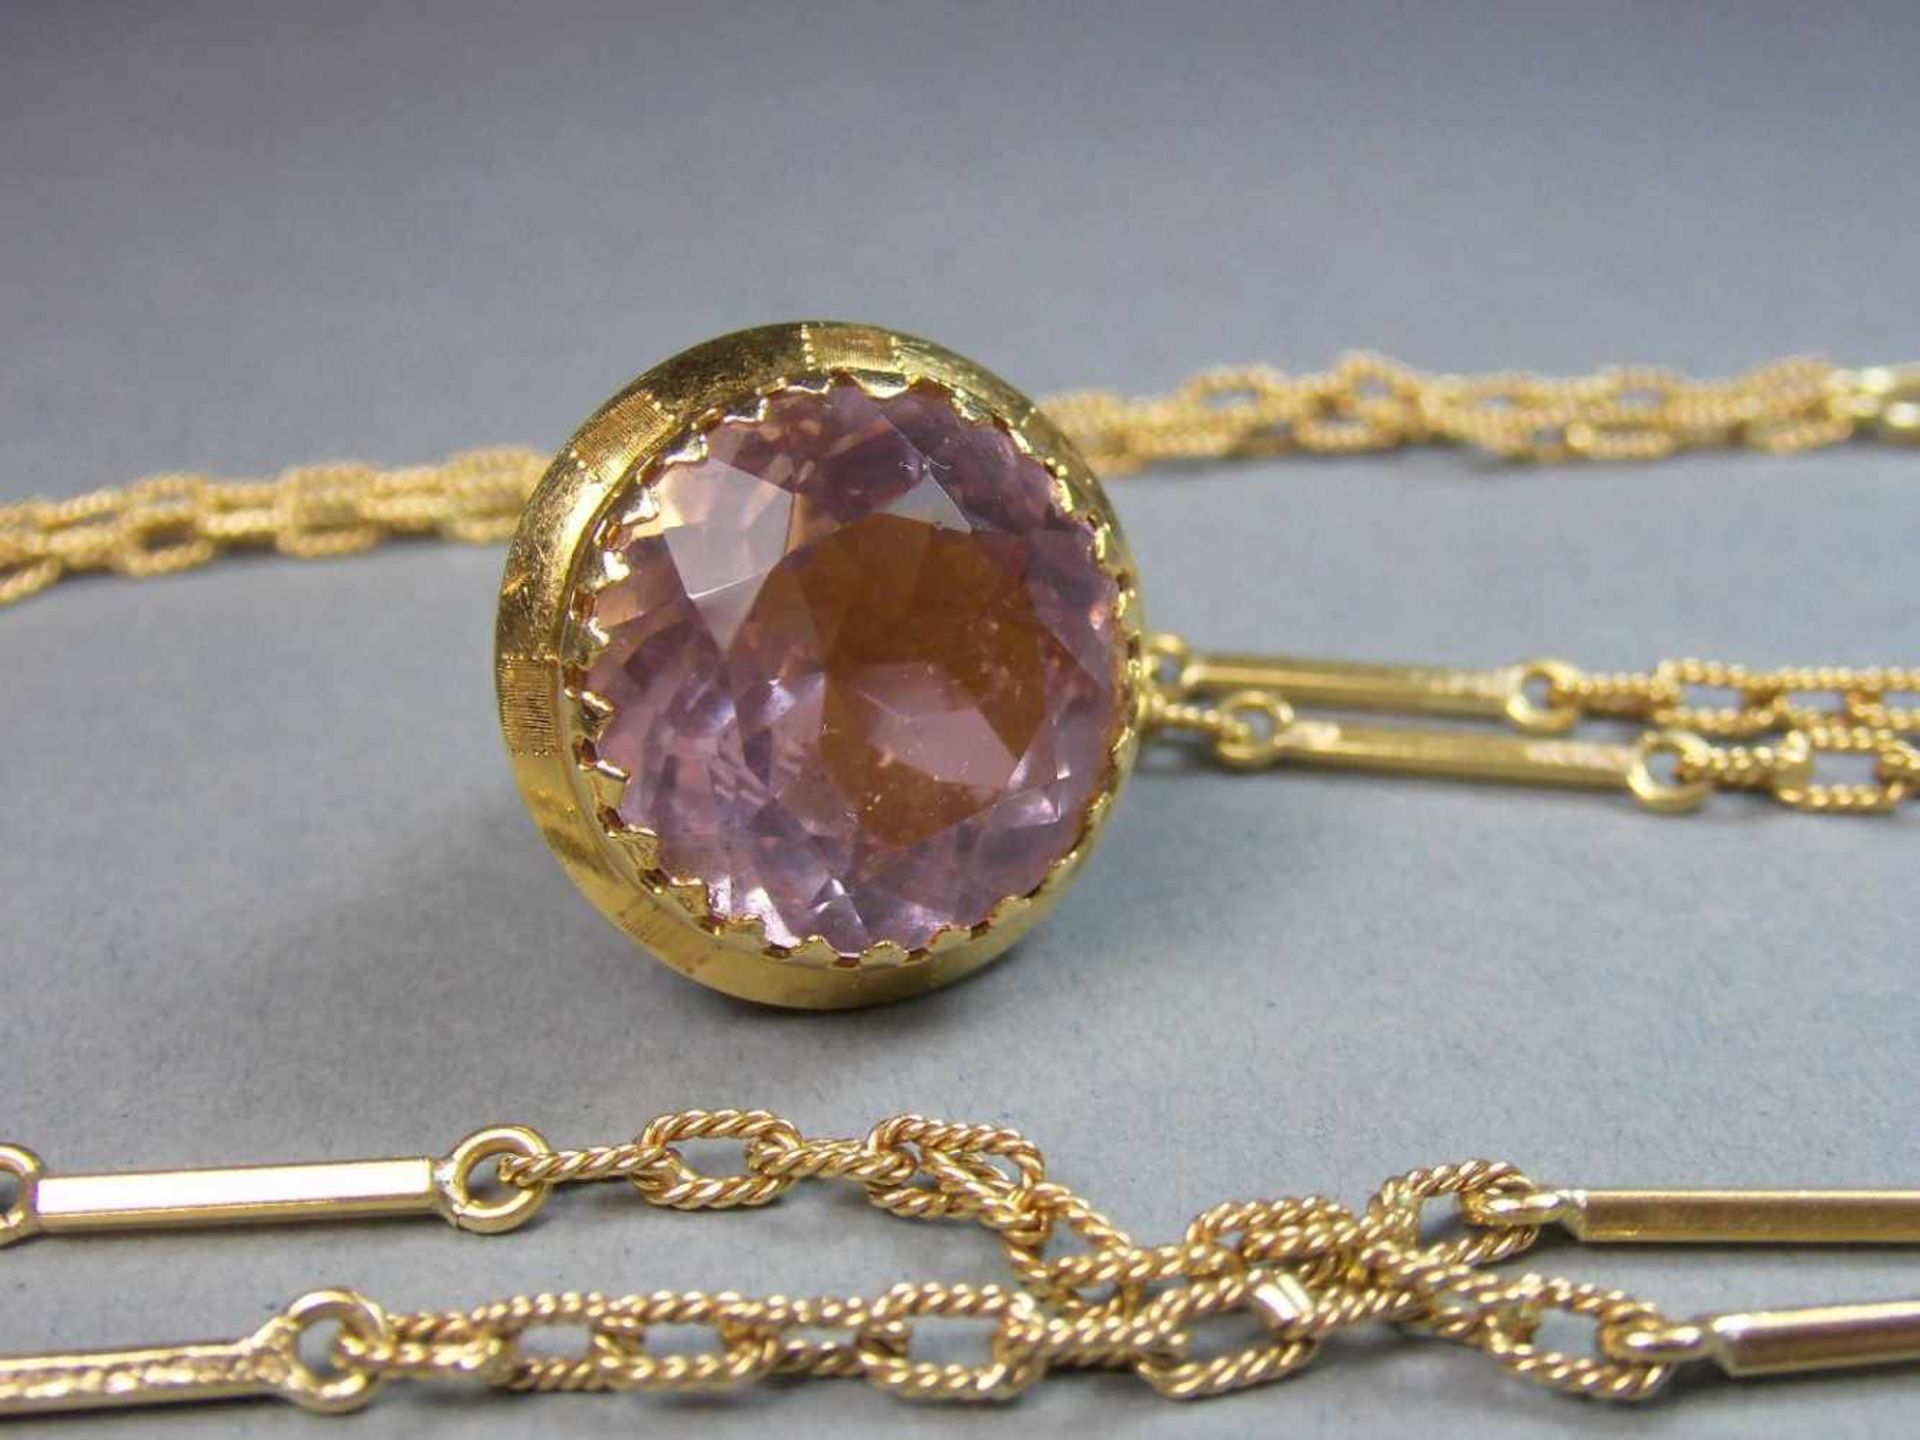 KETTE MIT ANHÄNGER in Kegelform / necklace and pendant, darin roséfarbener Edelstein, 750er Gelbgold - Image 2 of 4